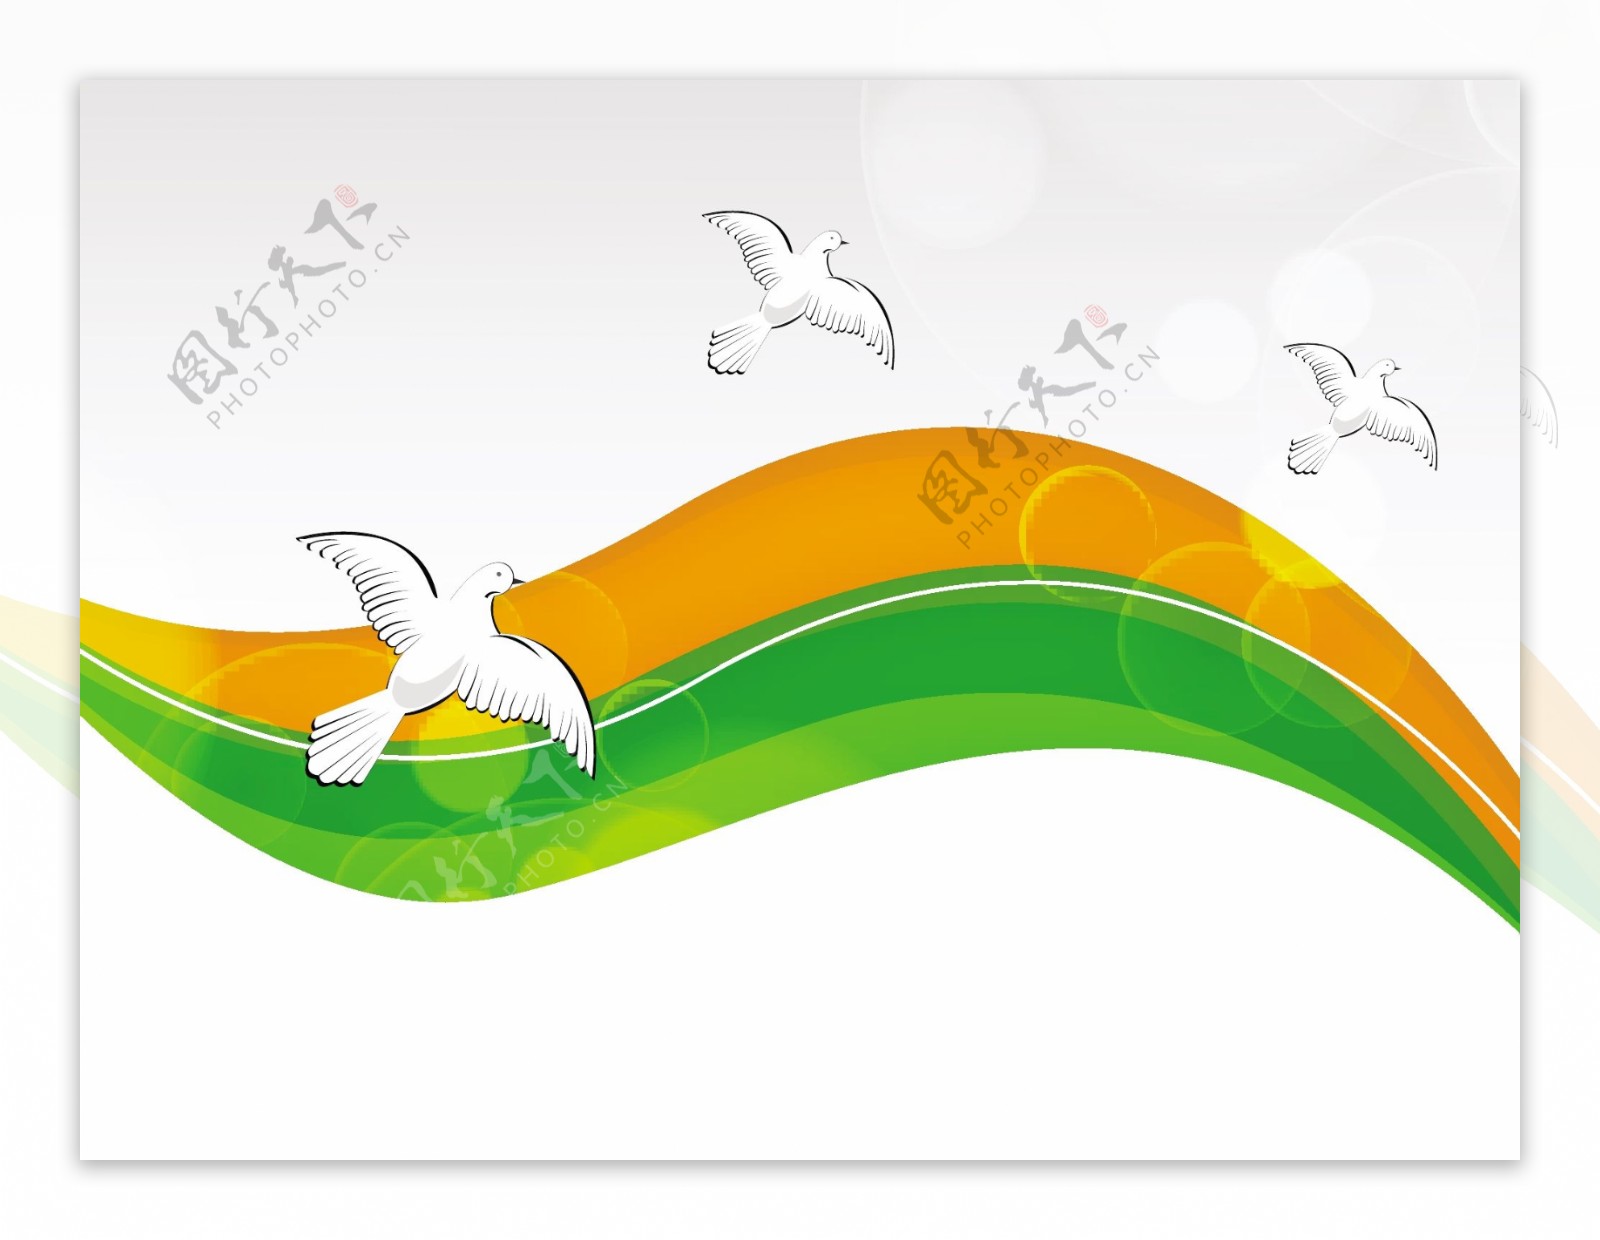 印度国旗颜色的背景与波的创意